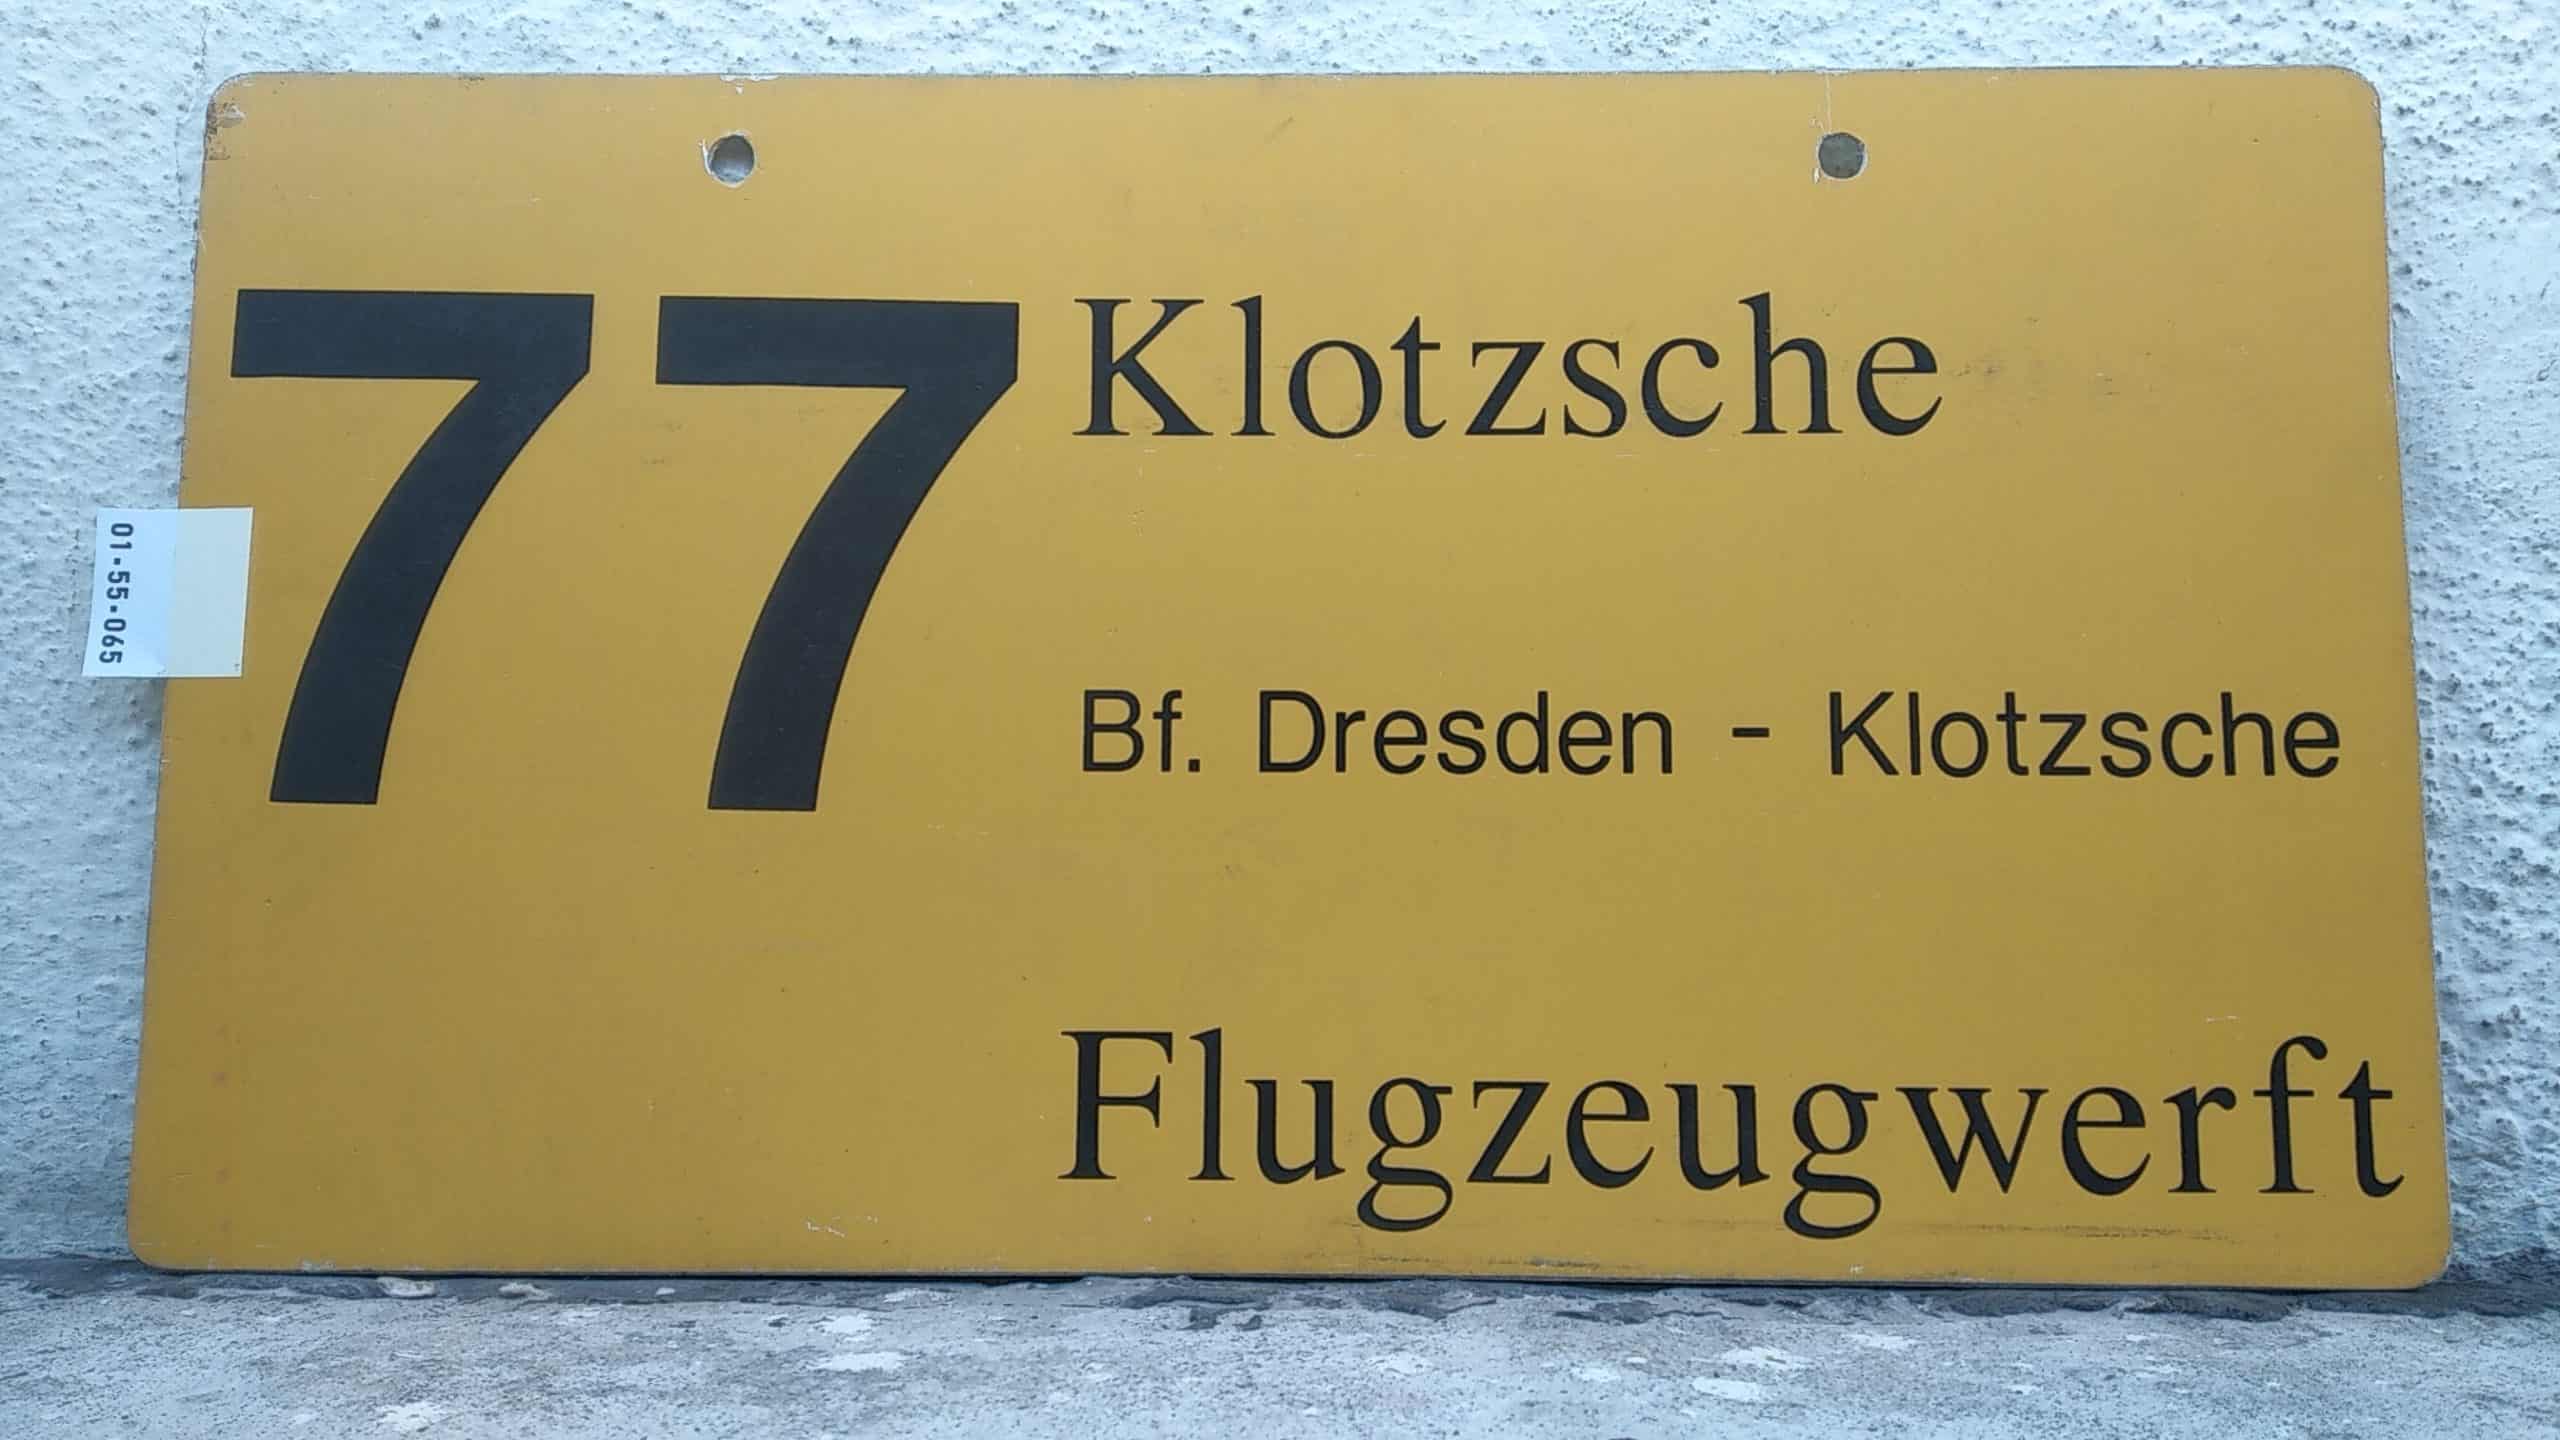 Ein seltenes Bus-Linienschild aus Dresden der Linie 77 von Klotzsche nach Flugzeugwerft #1